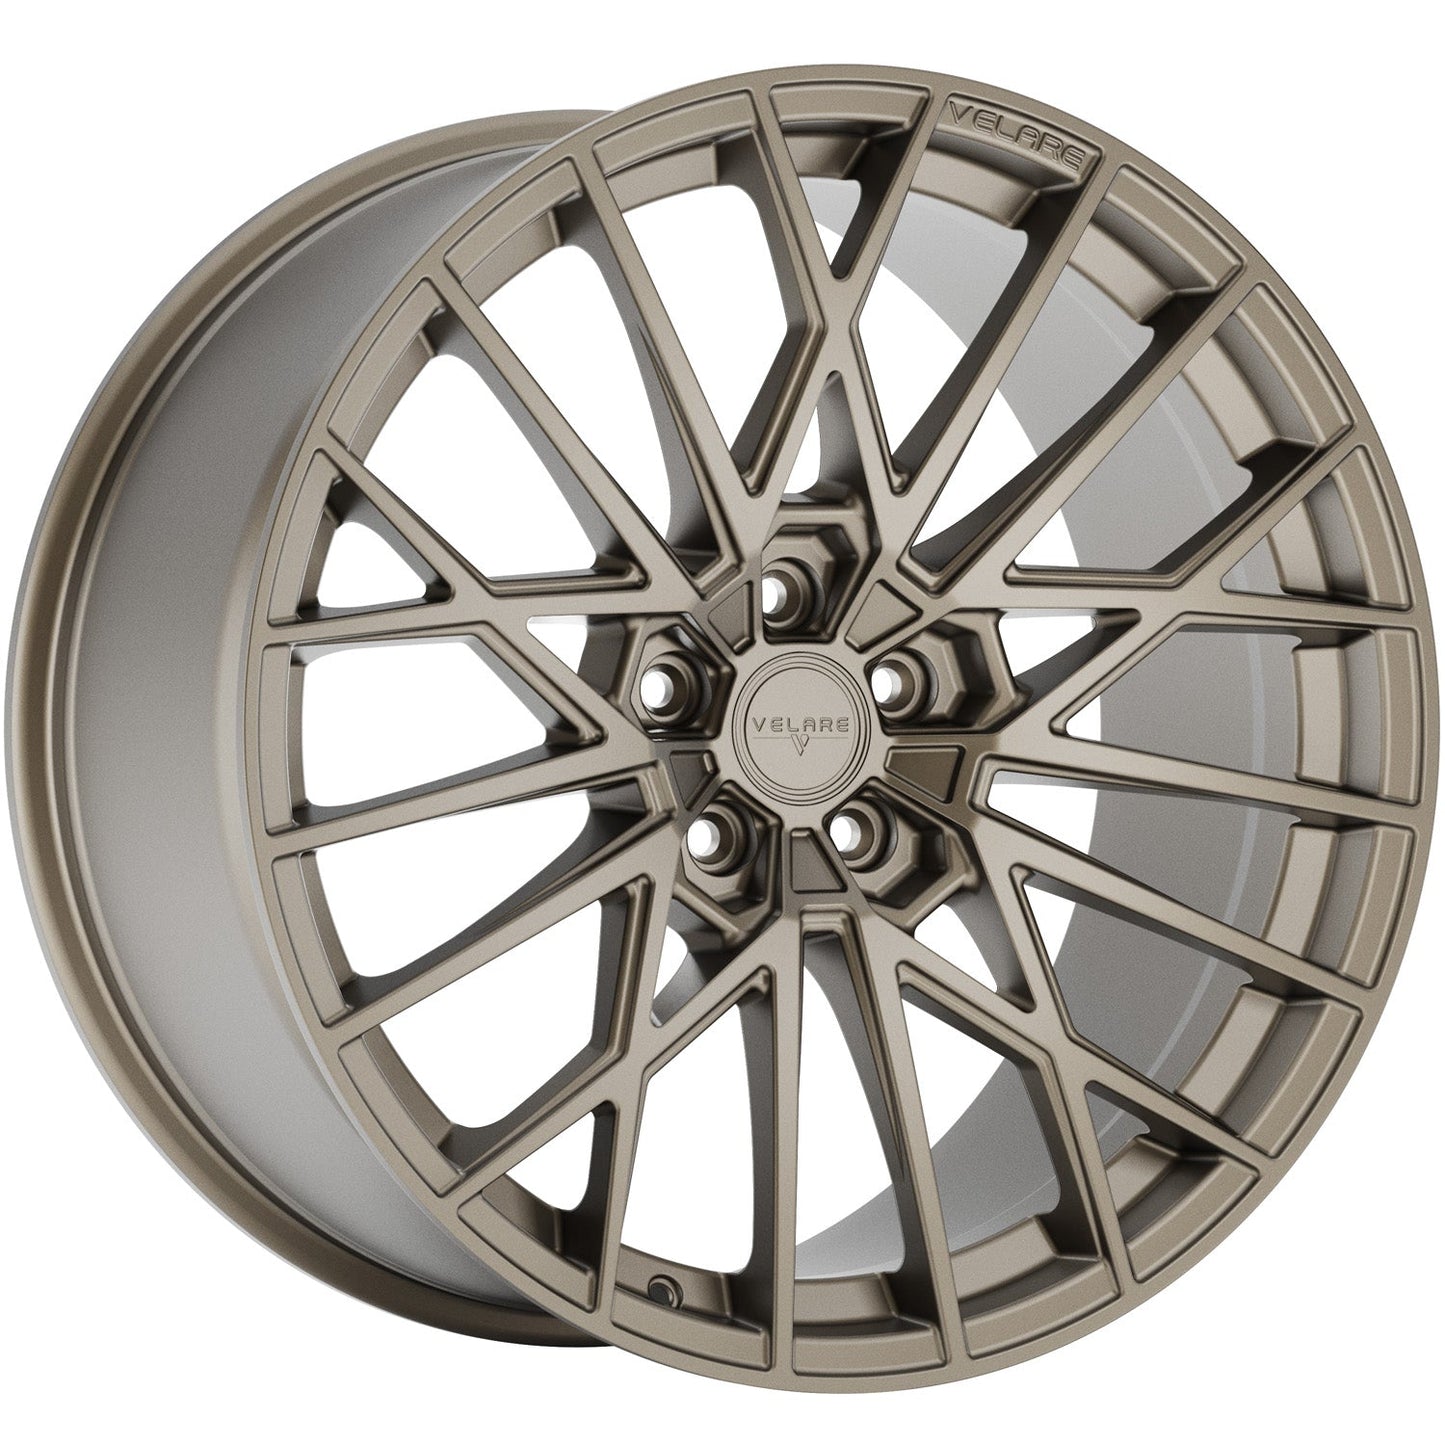 Velare-VLR07-Satin-Bronze-Bronze-20x10-72.6-wheels-rims-felger-Felghuset